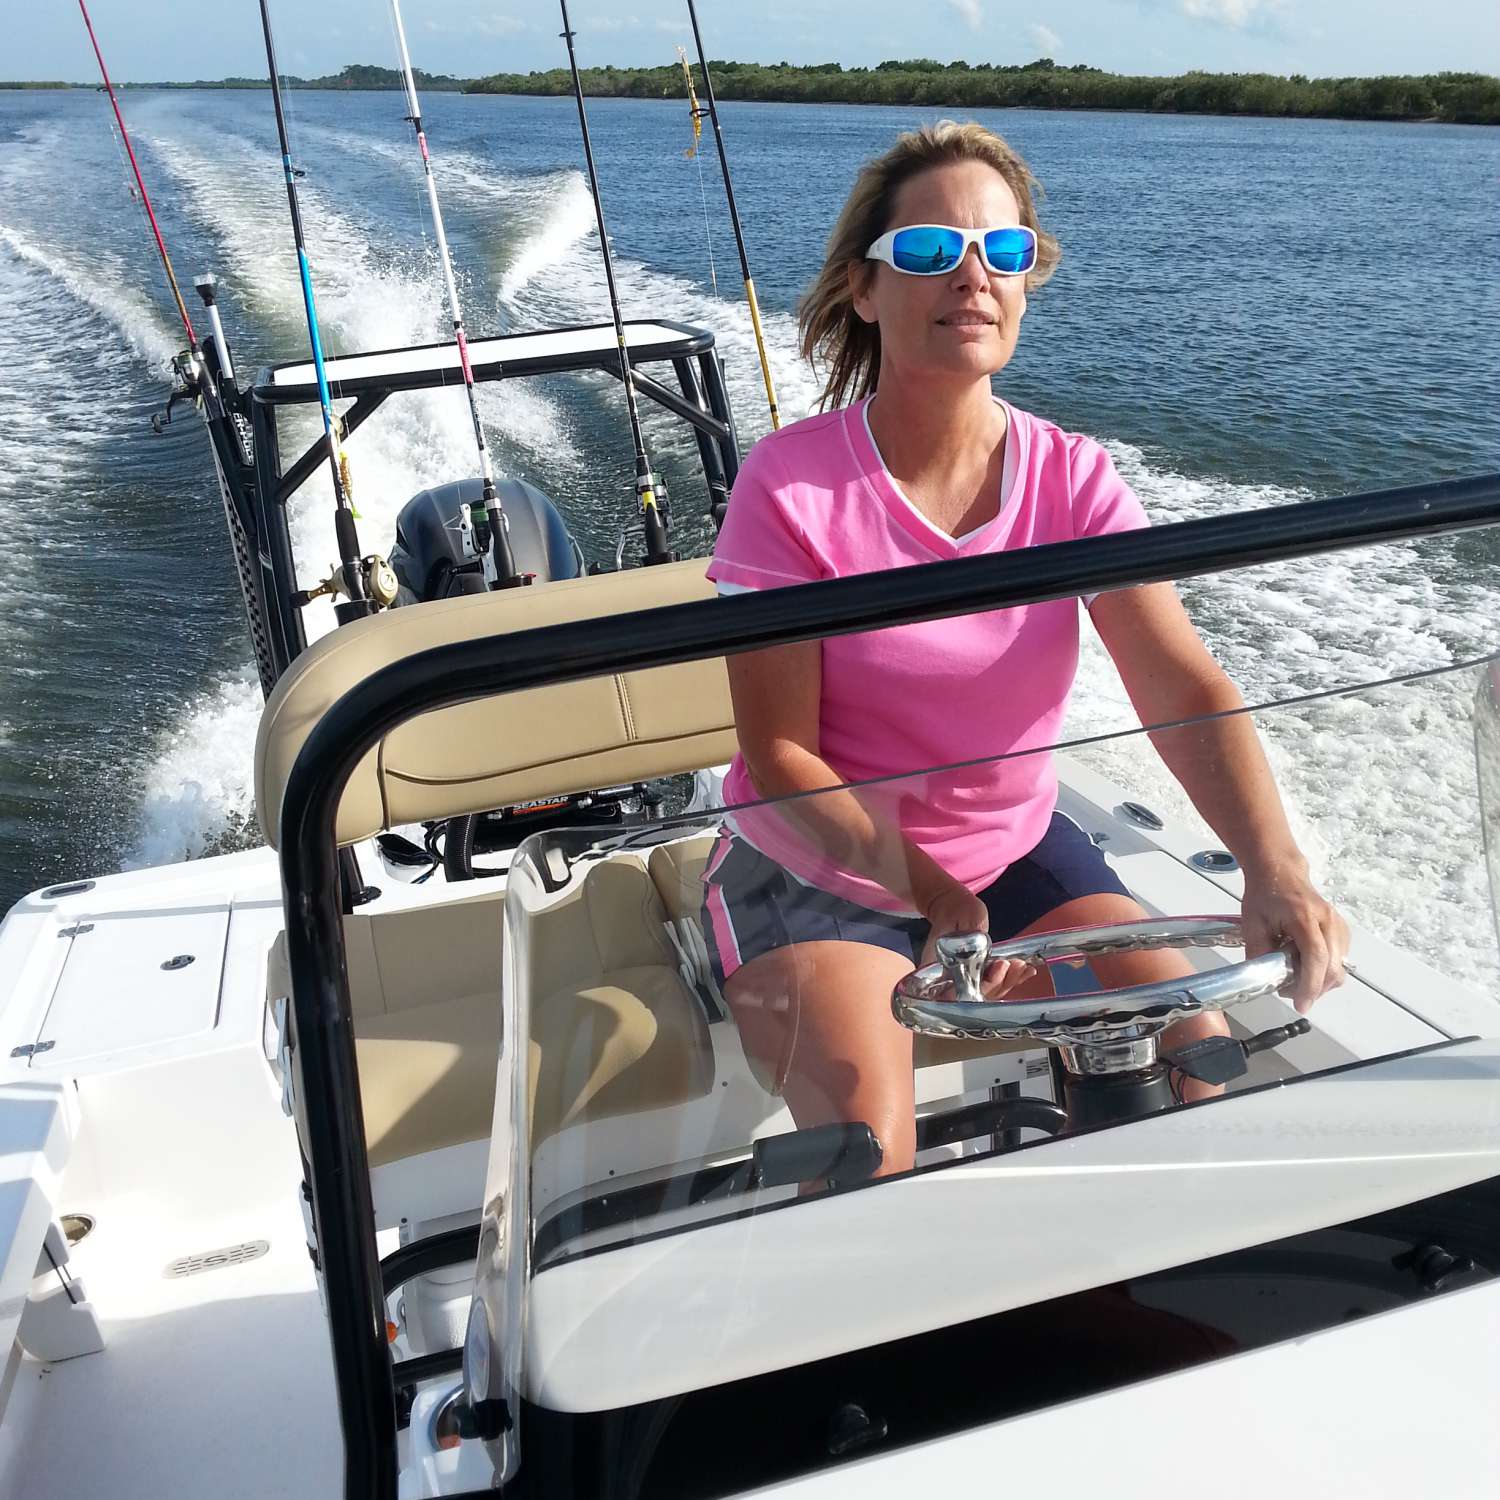 My photo was taken on the Halifax river Port Orange Florida, Lori enjoying her first time drivi...